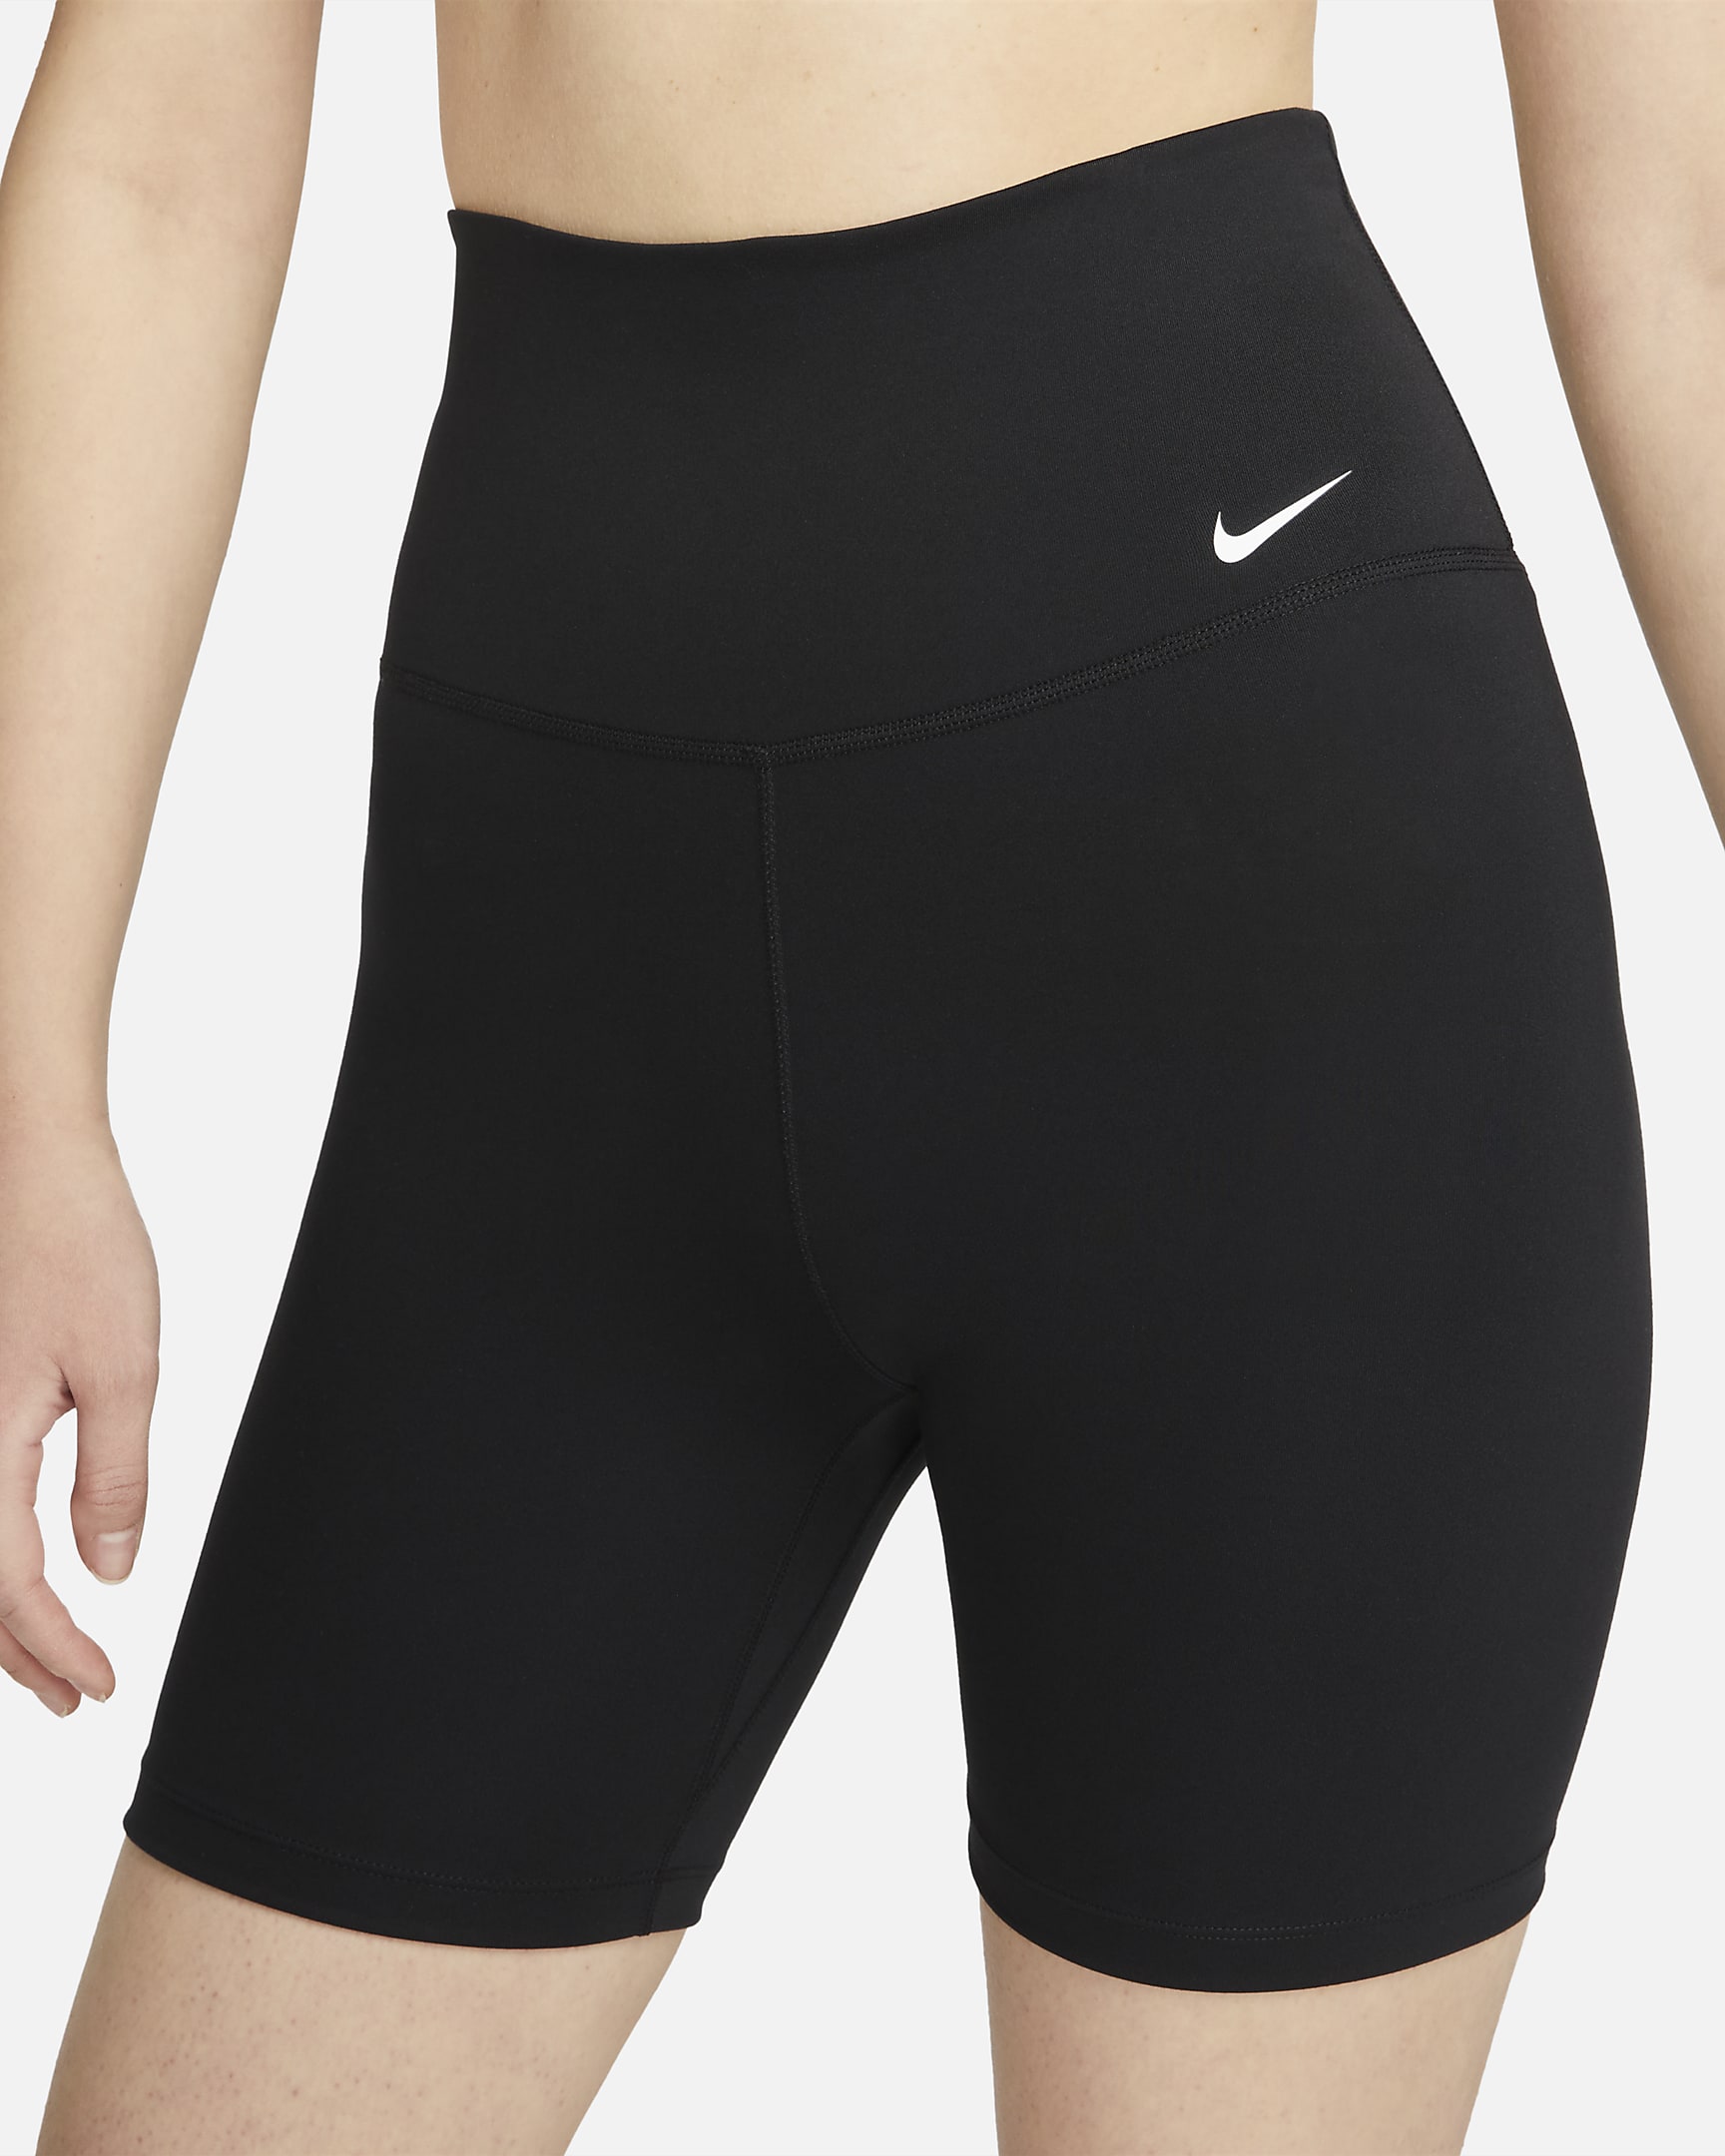 Nike Dri-FIT One Women's High-Waisted 18cm (approx.) Biker Shorts. Nike ID